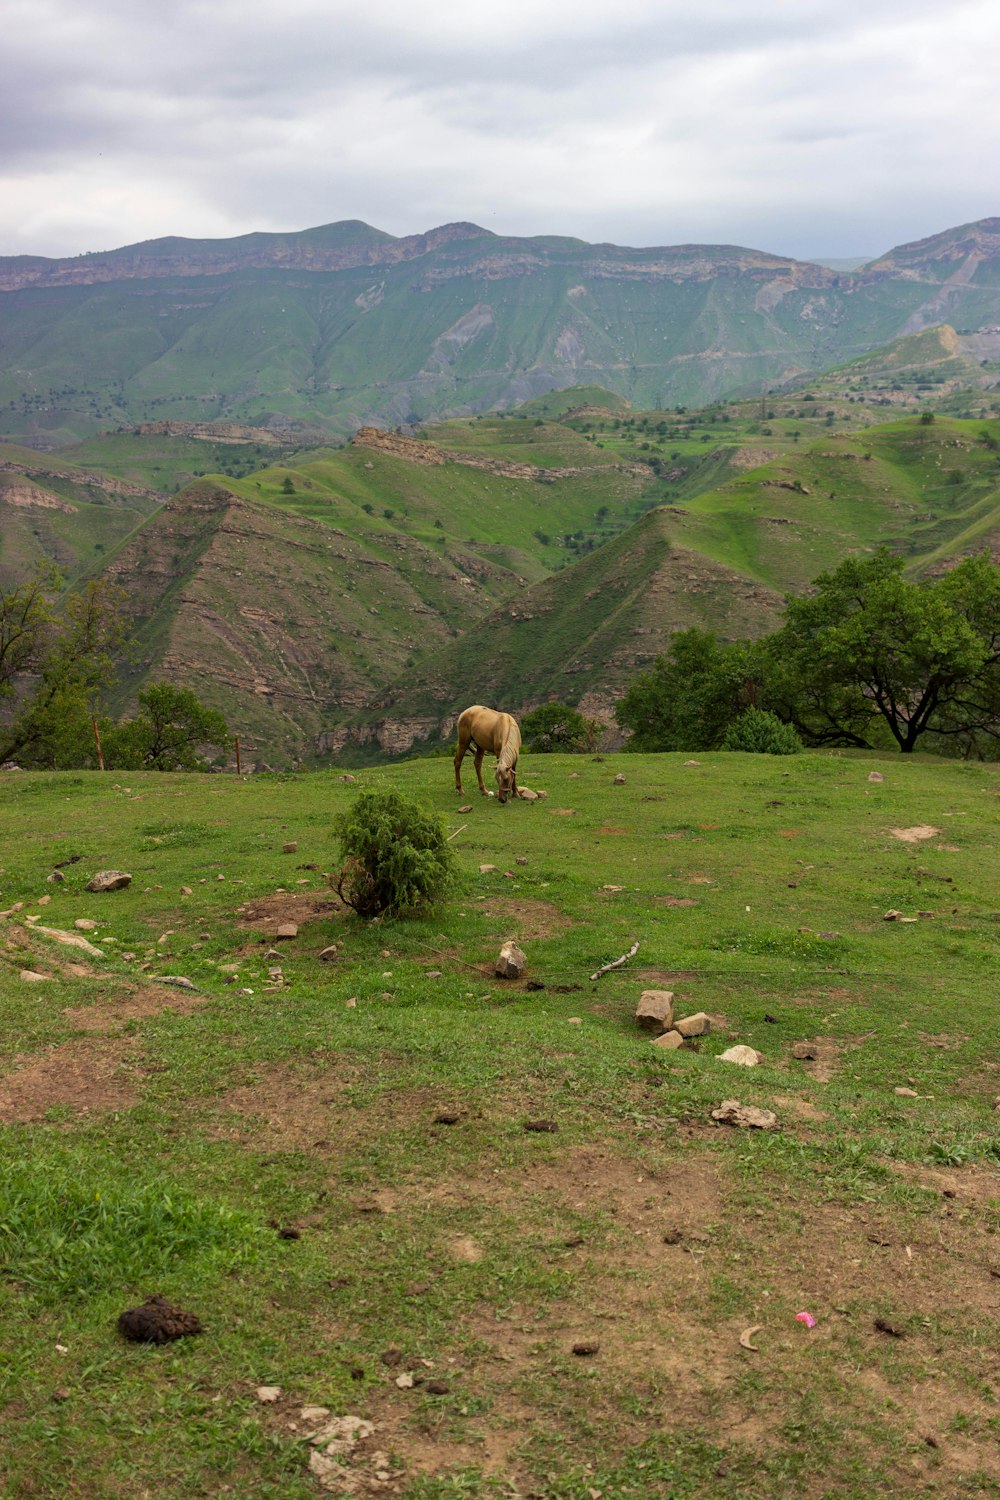 a horse grazing on a lush green hillside